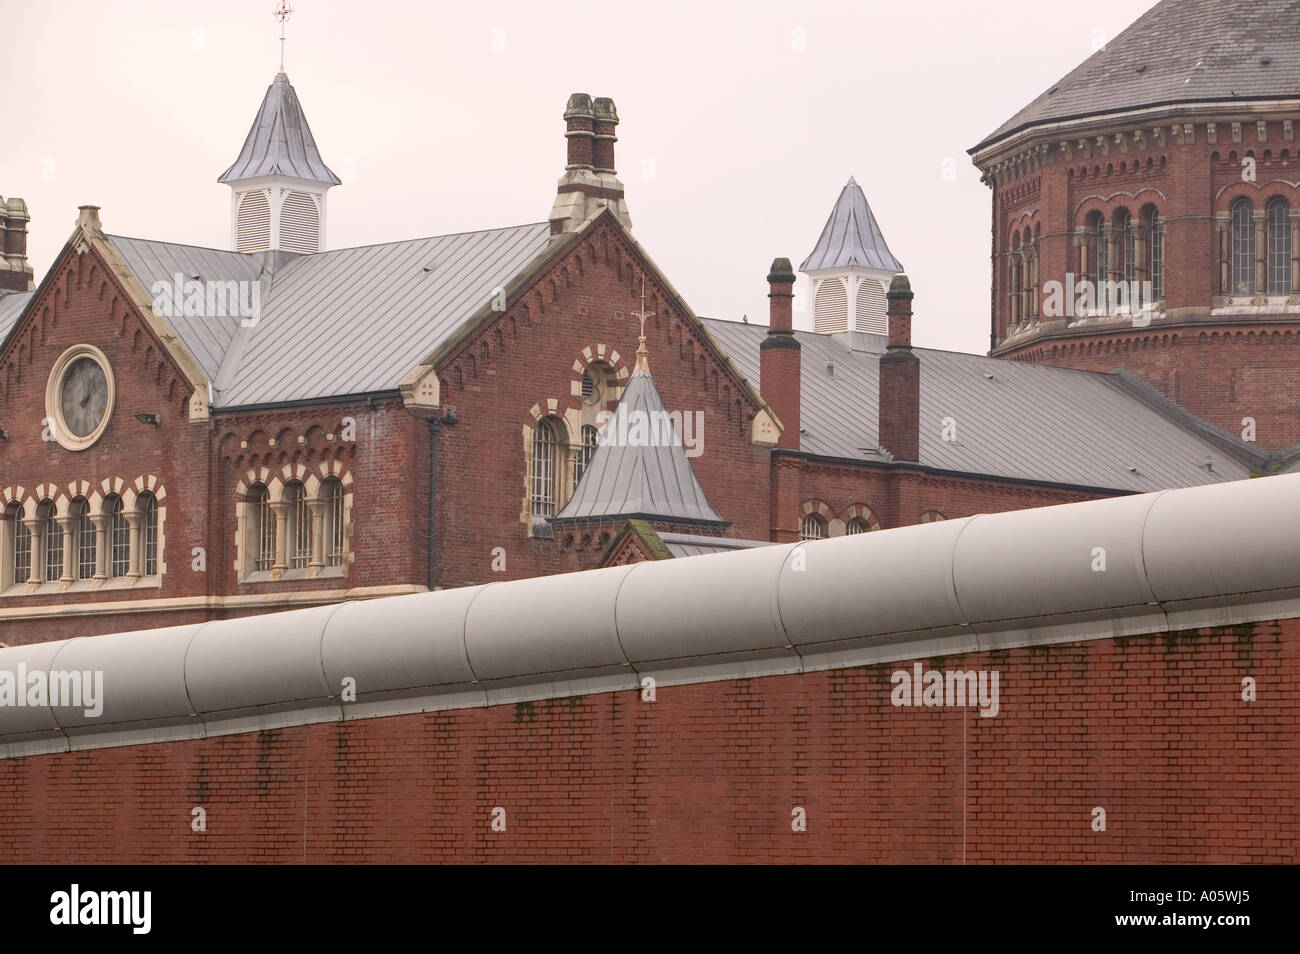 Strangeways prison in Manchester Stock Photo